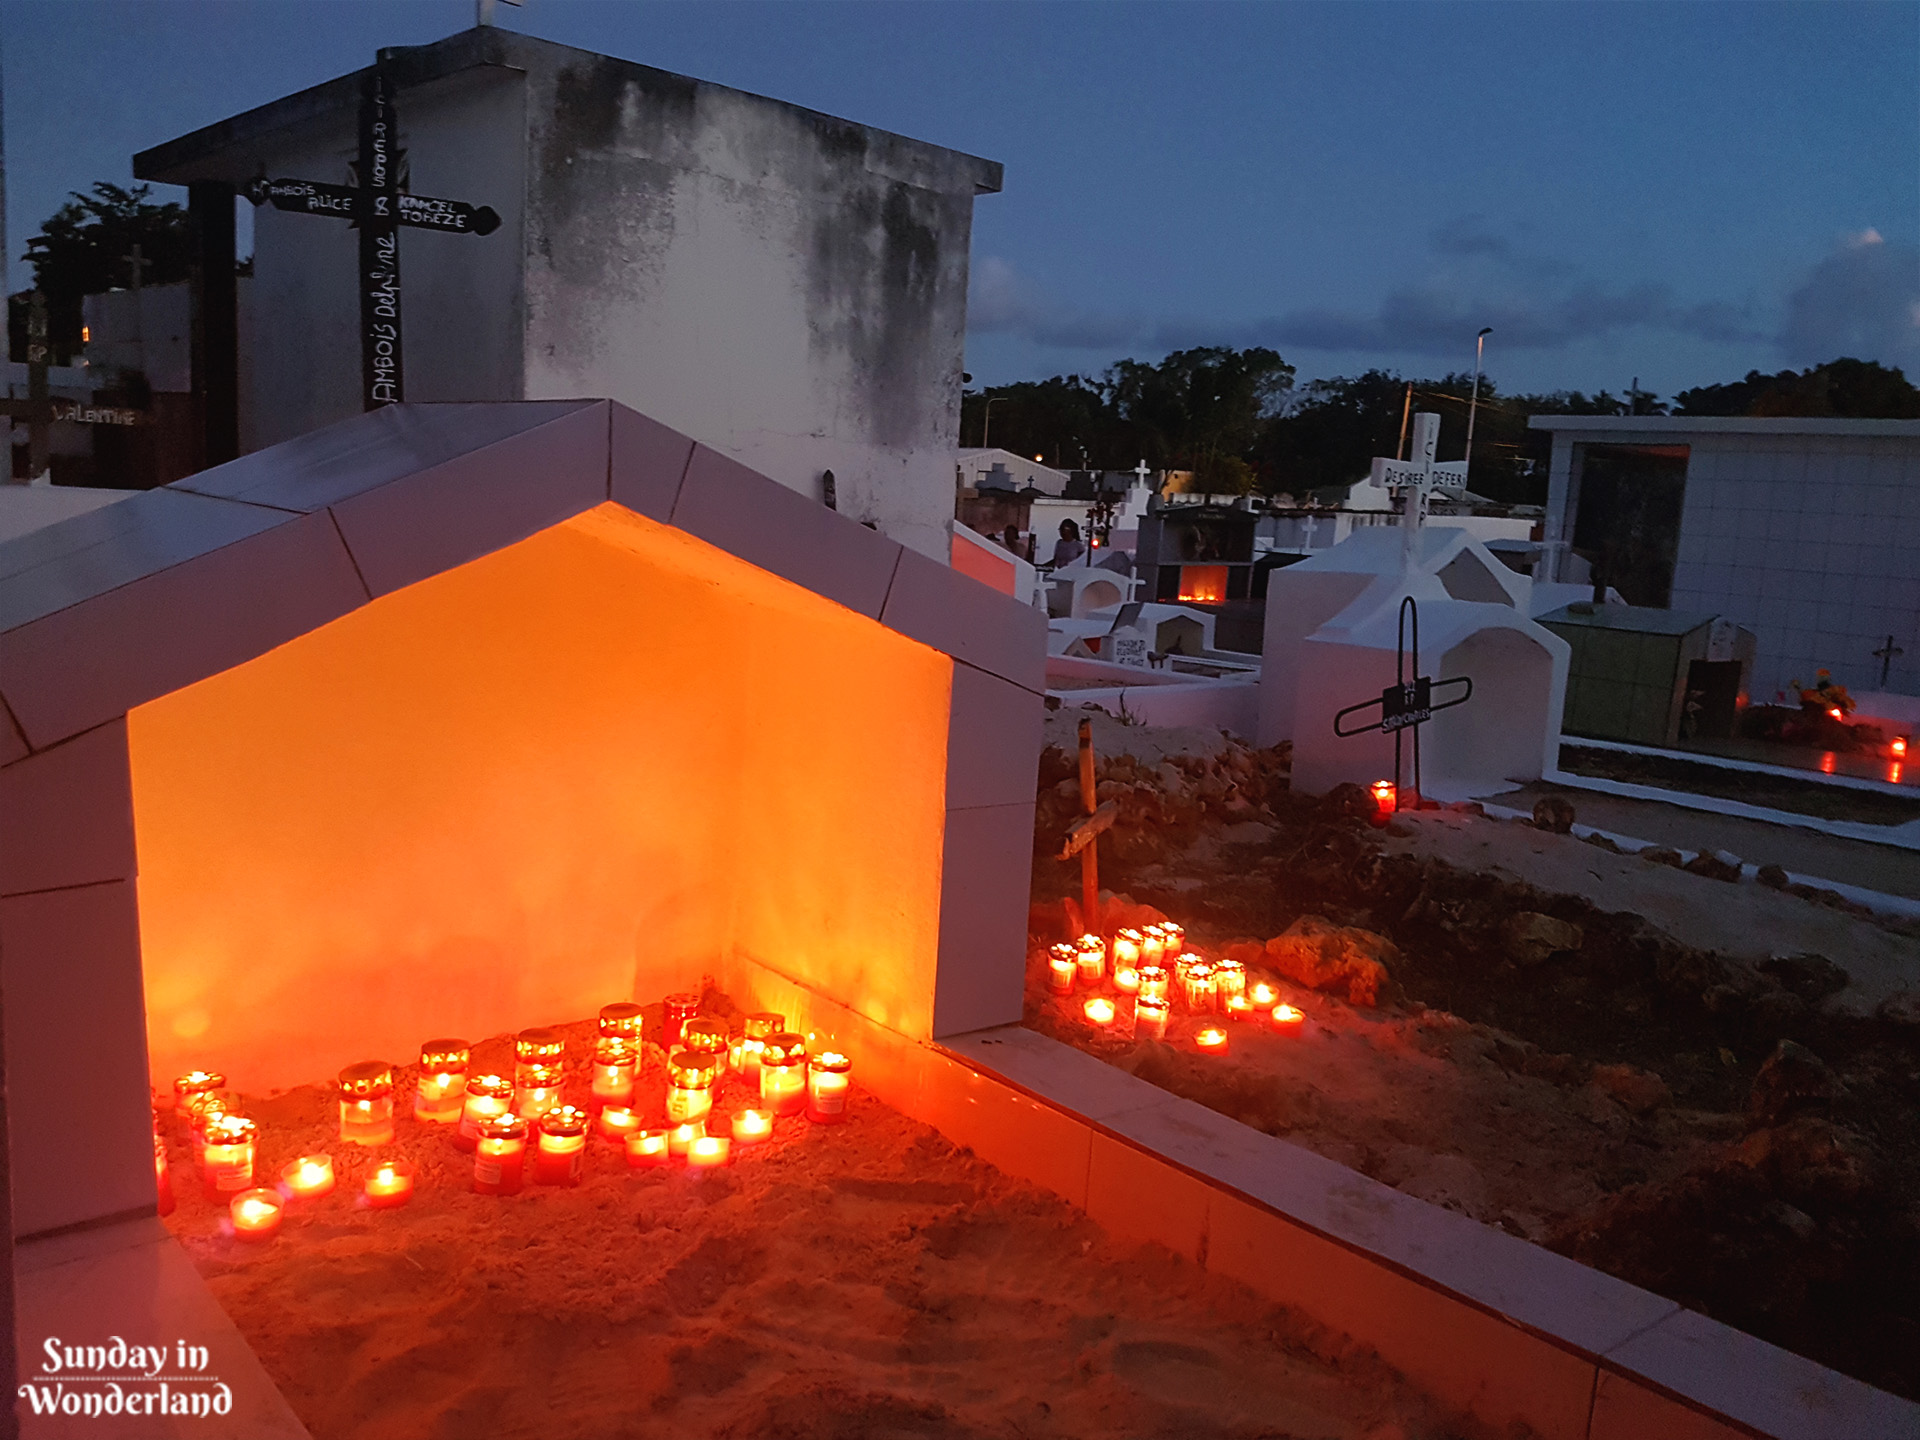 Antylski cmentarz staje się magiczny po zmroku - Sainte-Anne, Gwadelupa, Karaiby - Sunday in Wonderland Blog